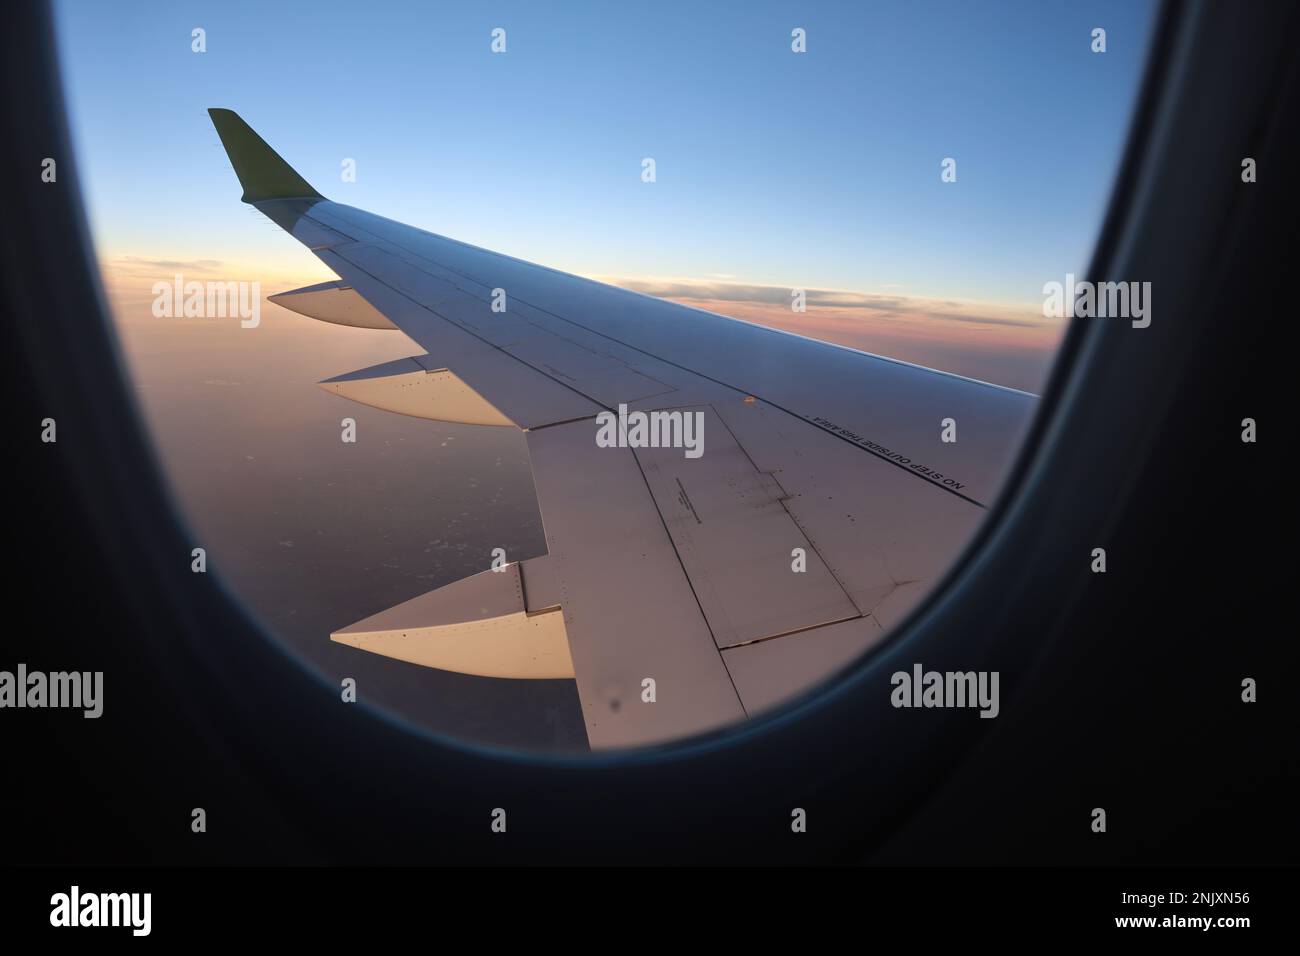 Dieses atemberaubende Stockfoto zeigt die Aussicht aus einem Fenster eines Passagierflugzeugs und zeigt einen majestätischen Flügel, der durch den klaren, wolkenlosen Himmel schwebt Stockfoto